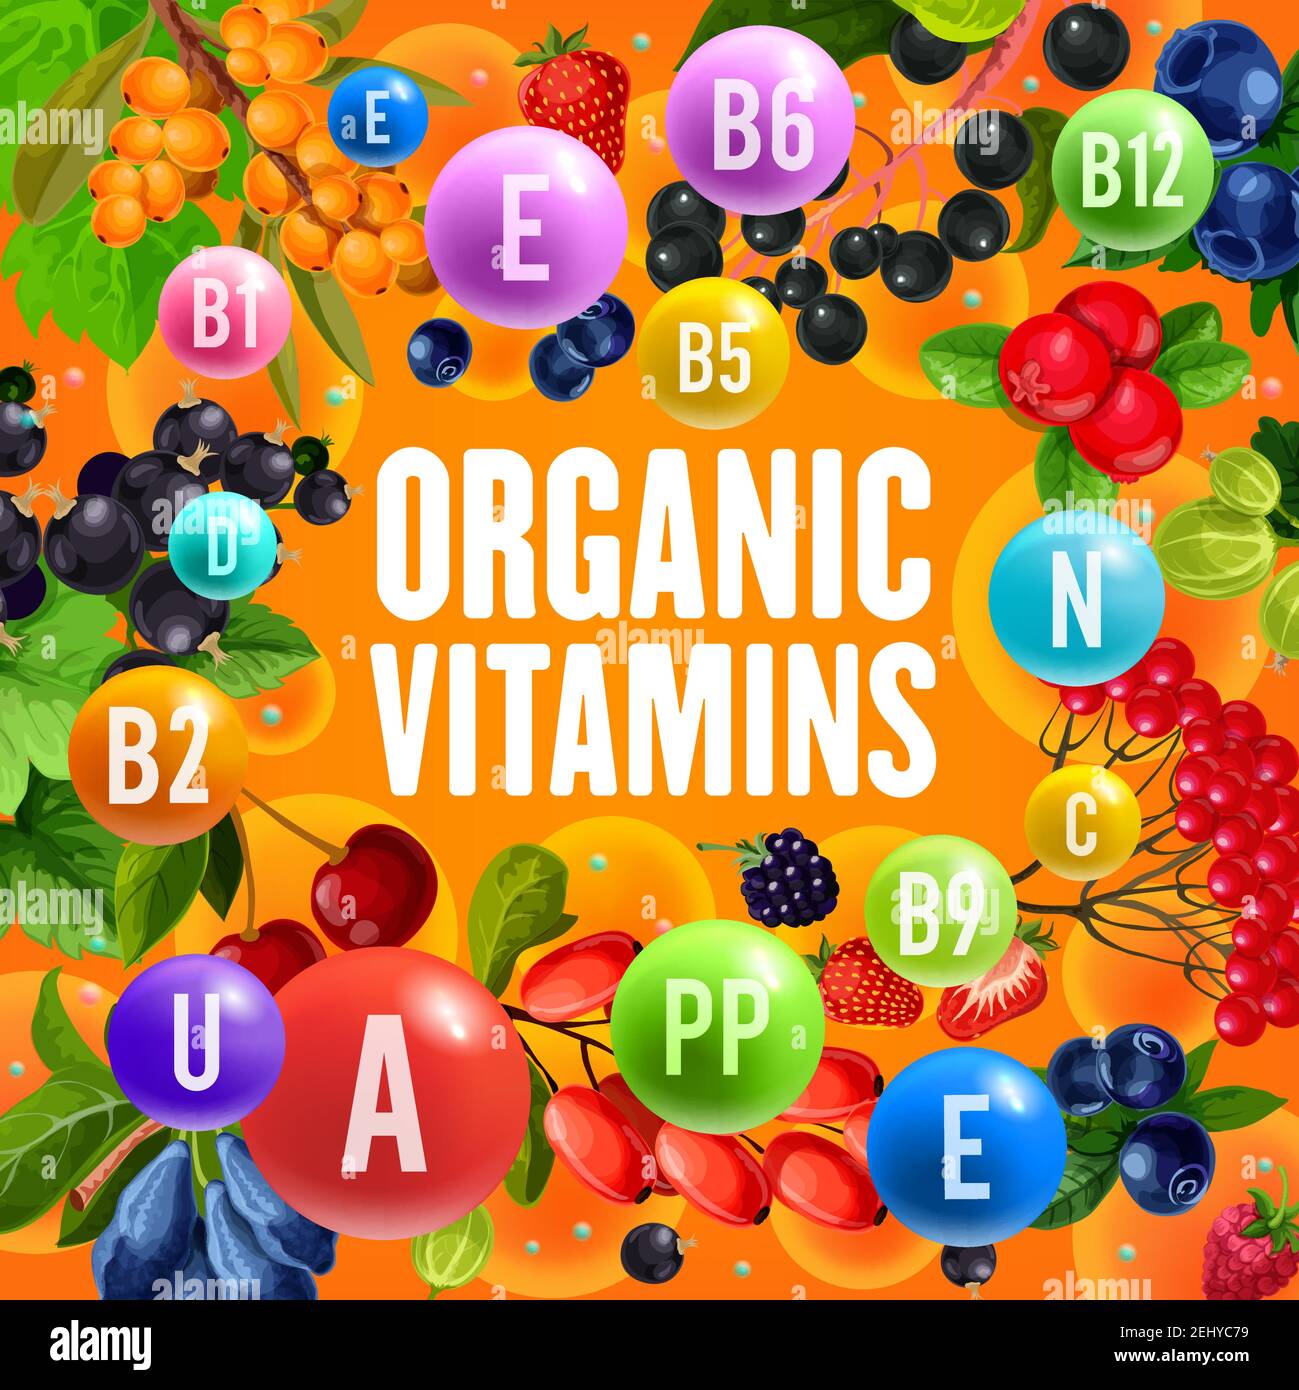 Baies contenu en vitamines et avantages pour la santé affiche vectorielle. Fraise, cerise et myrtille, mûre, canneberge et cassis, groseille, rodoir Illustration de Vecteur